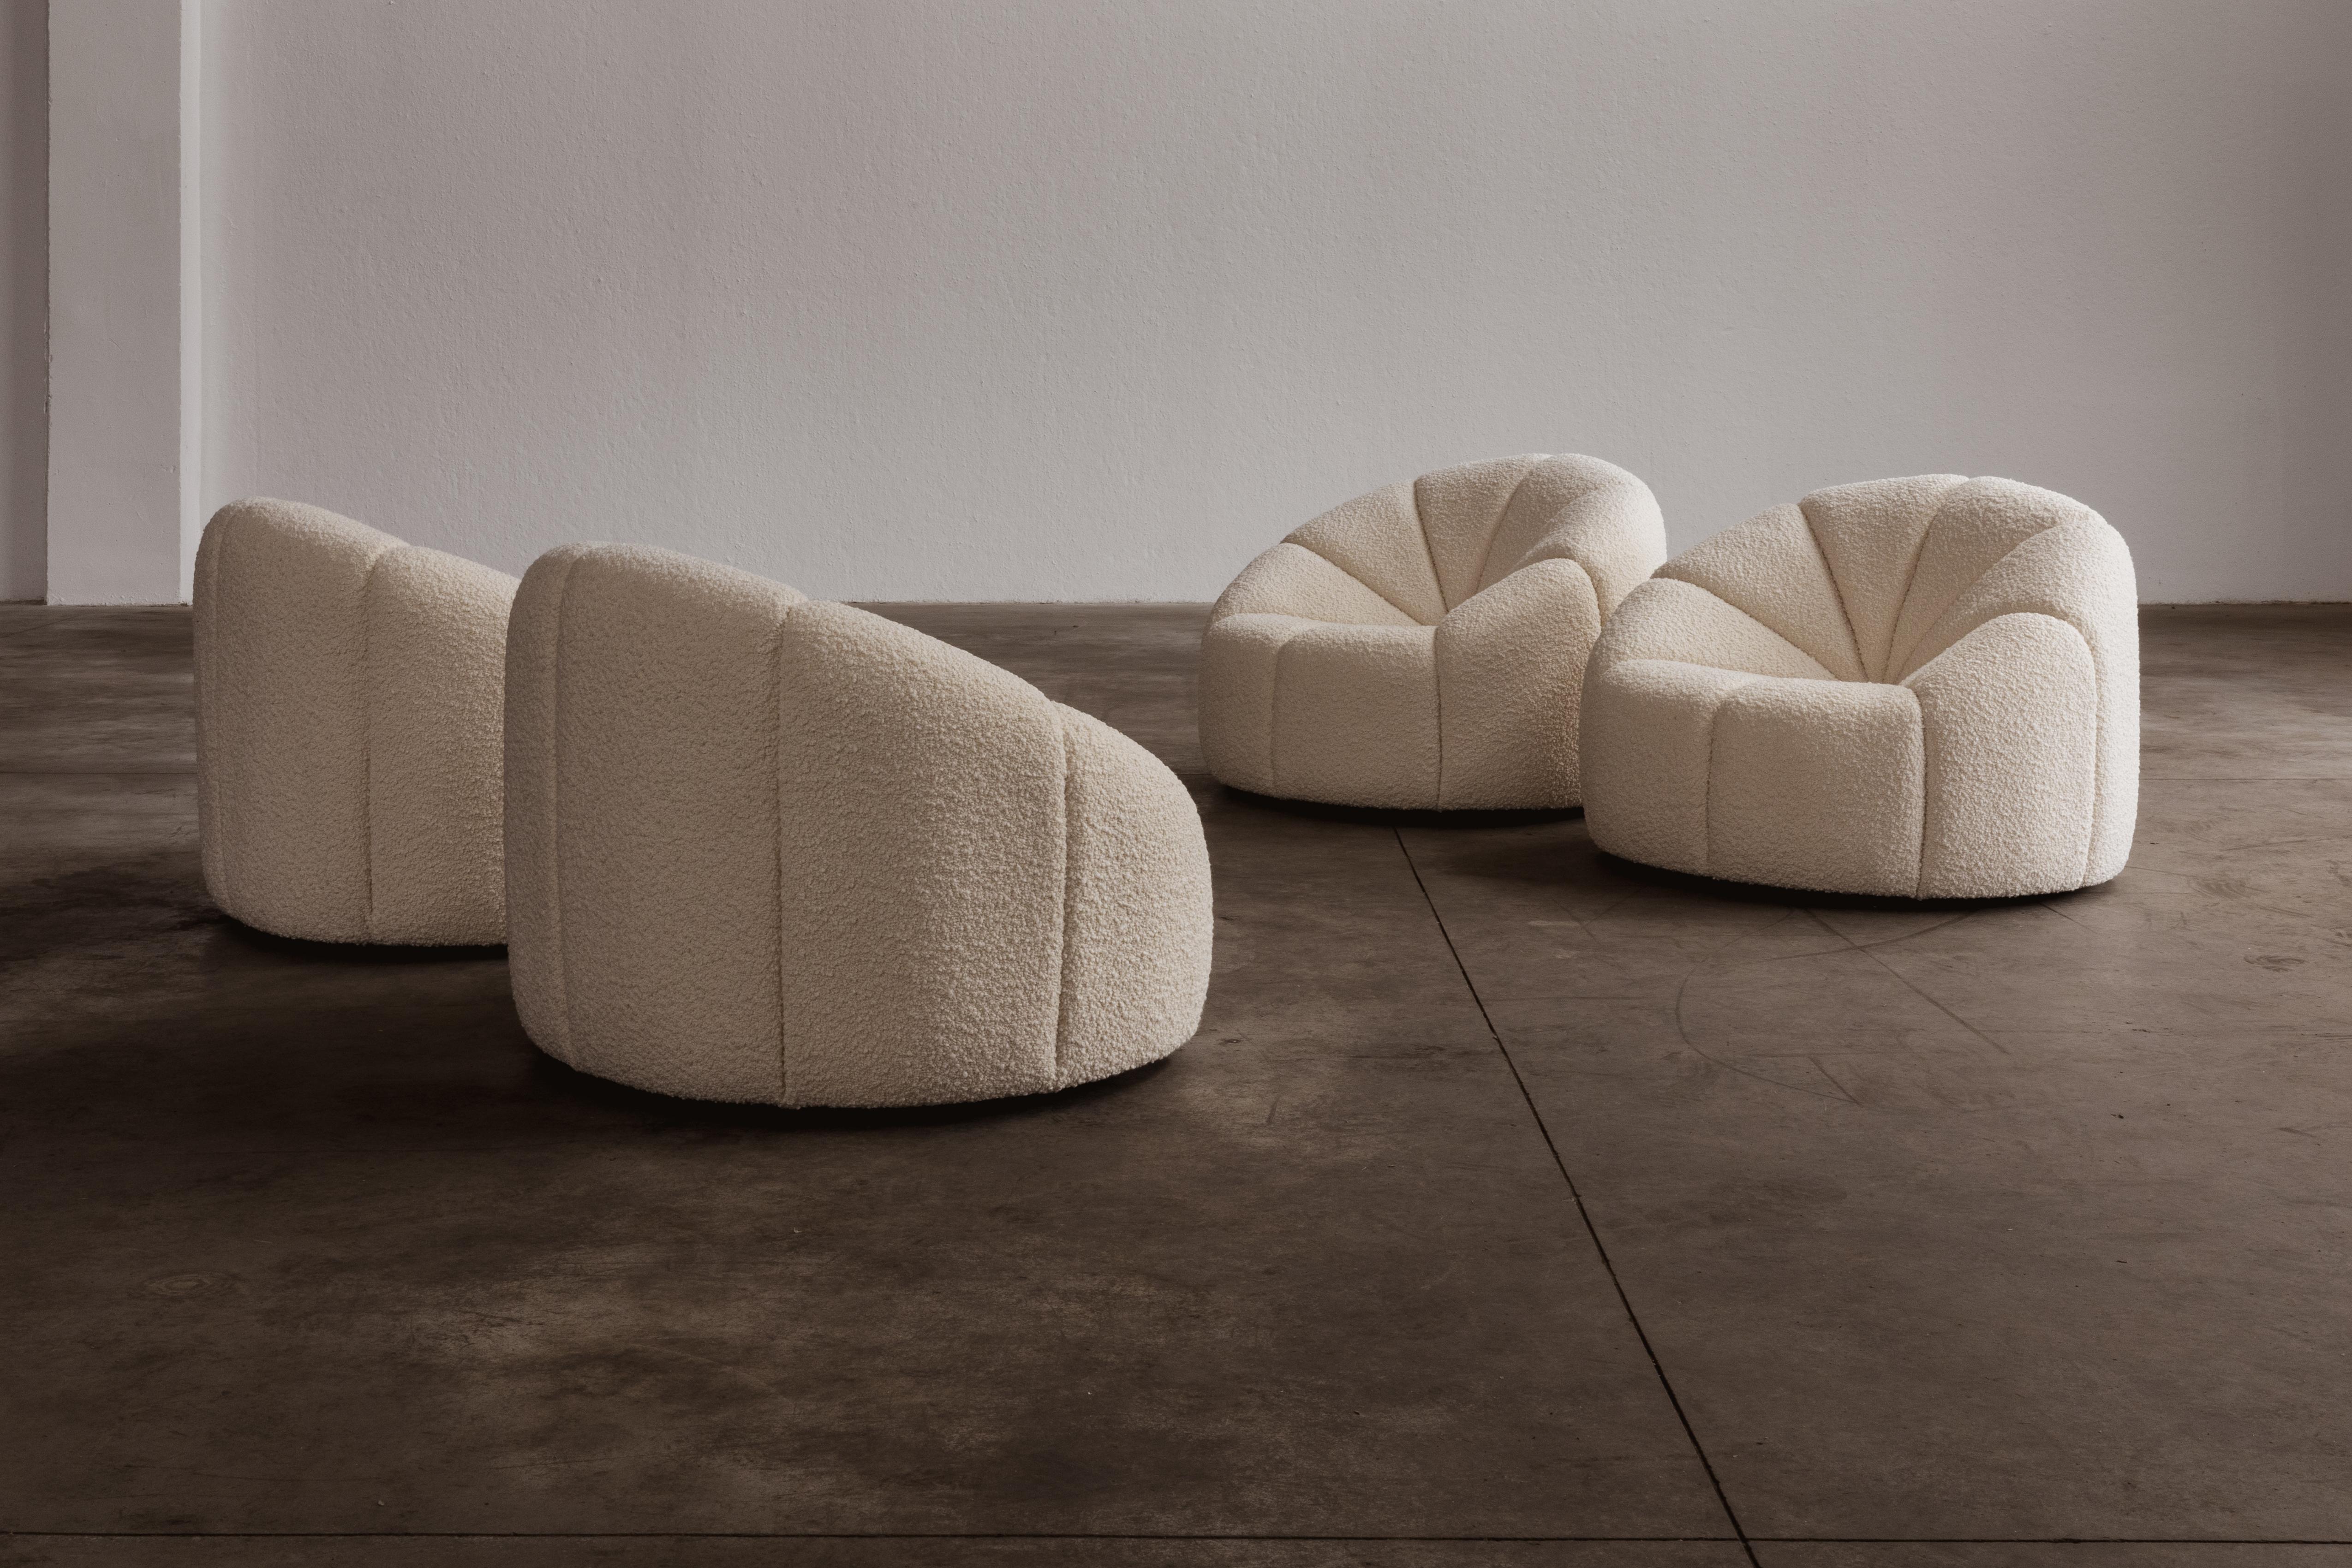 Pierre Paulin “Elysée” Chairs, 1972, Set of 4 1